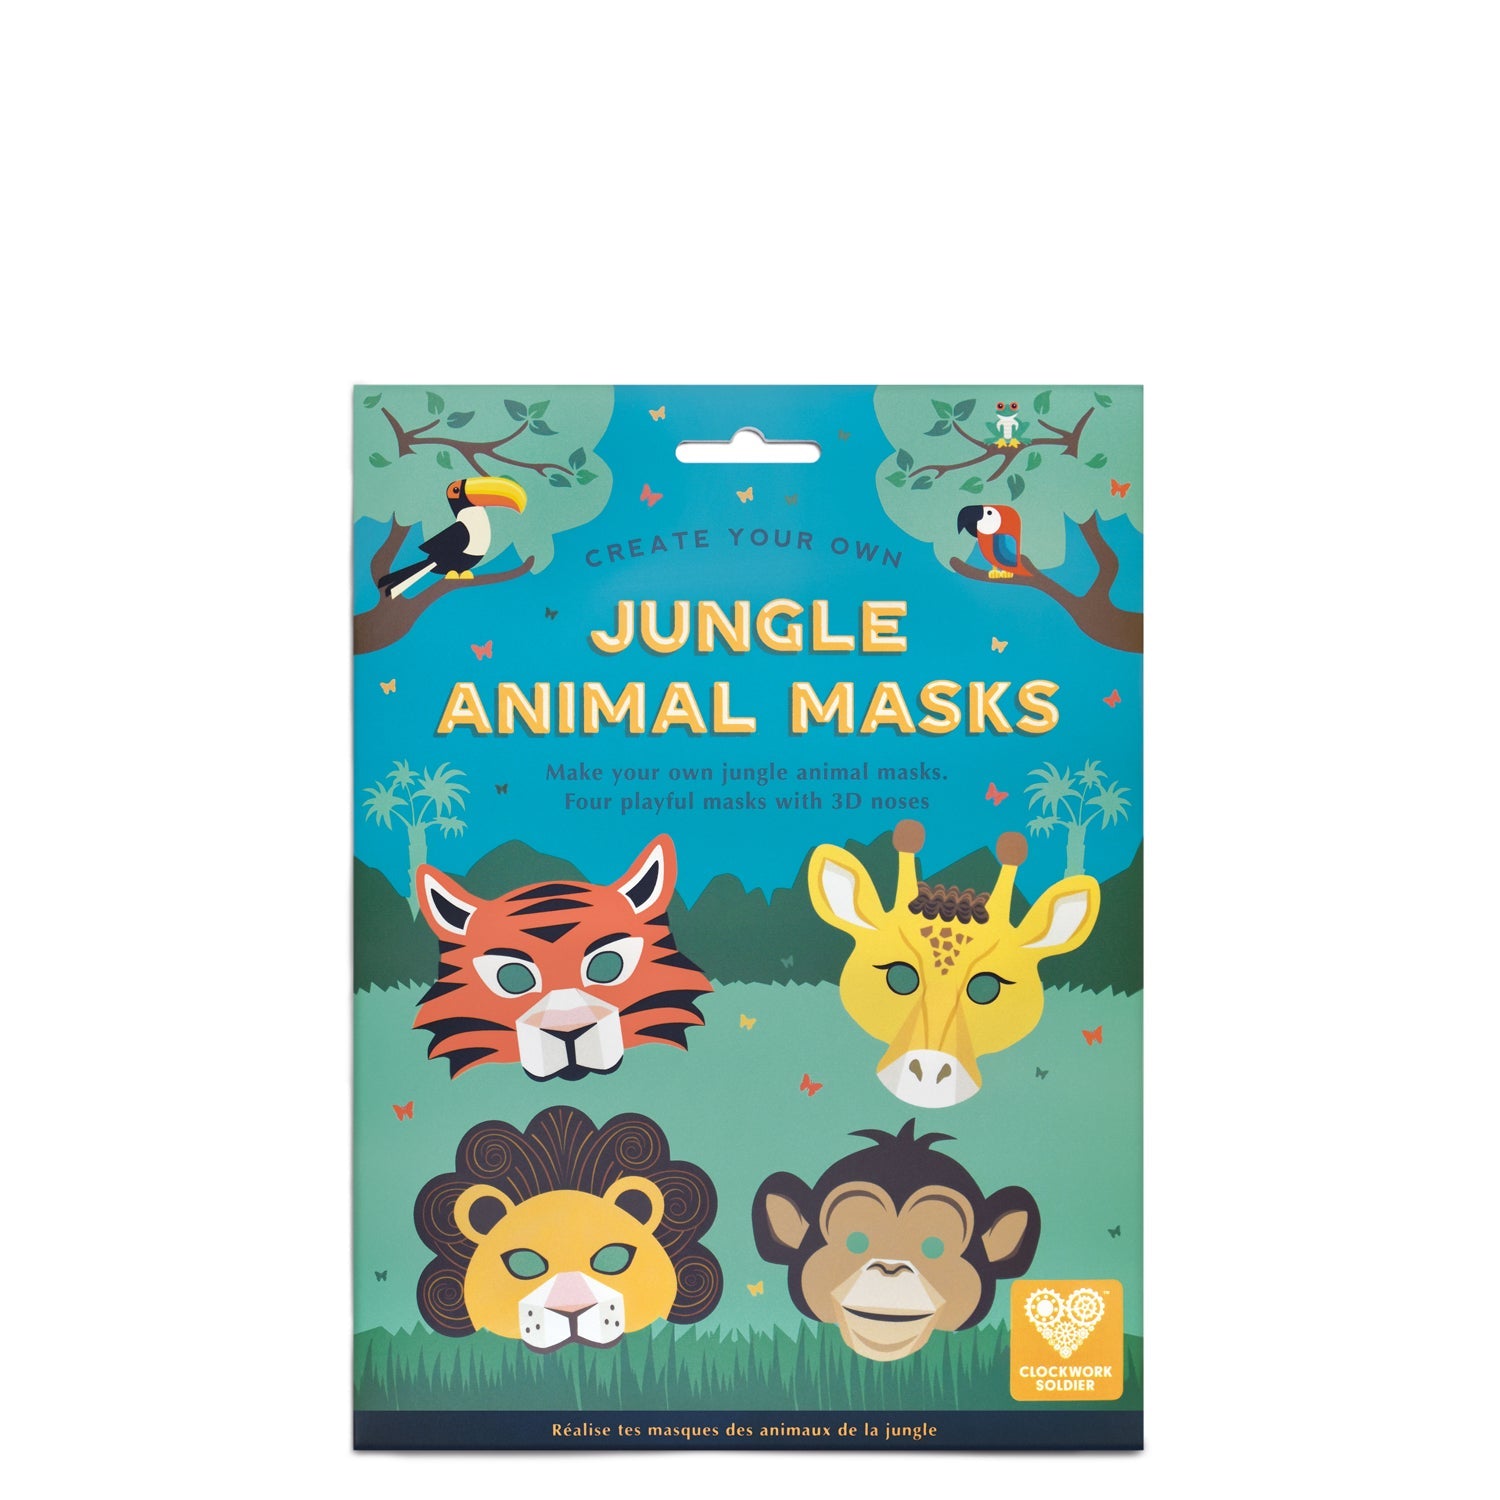 Crea tus propias máscaras de animales de cartón reciclado con las